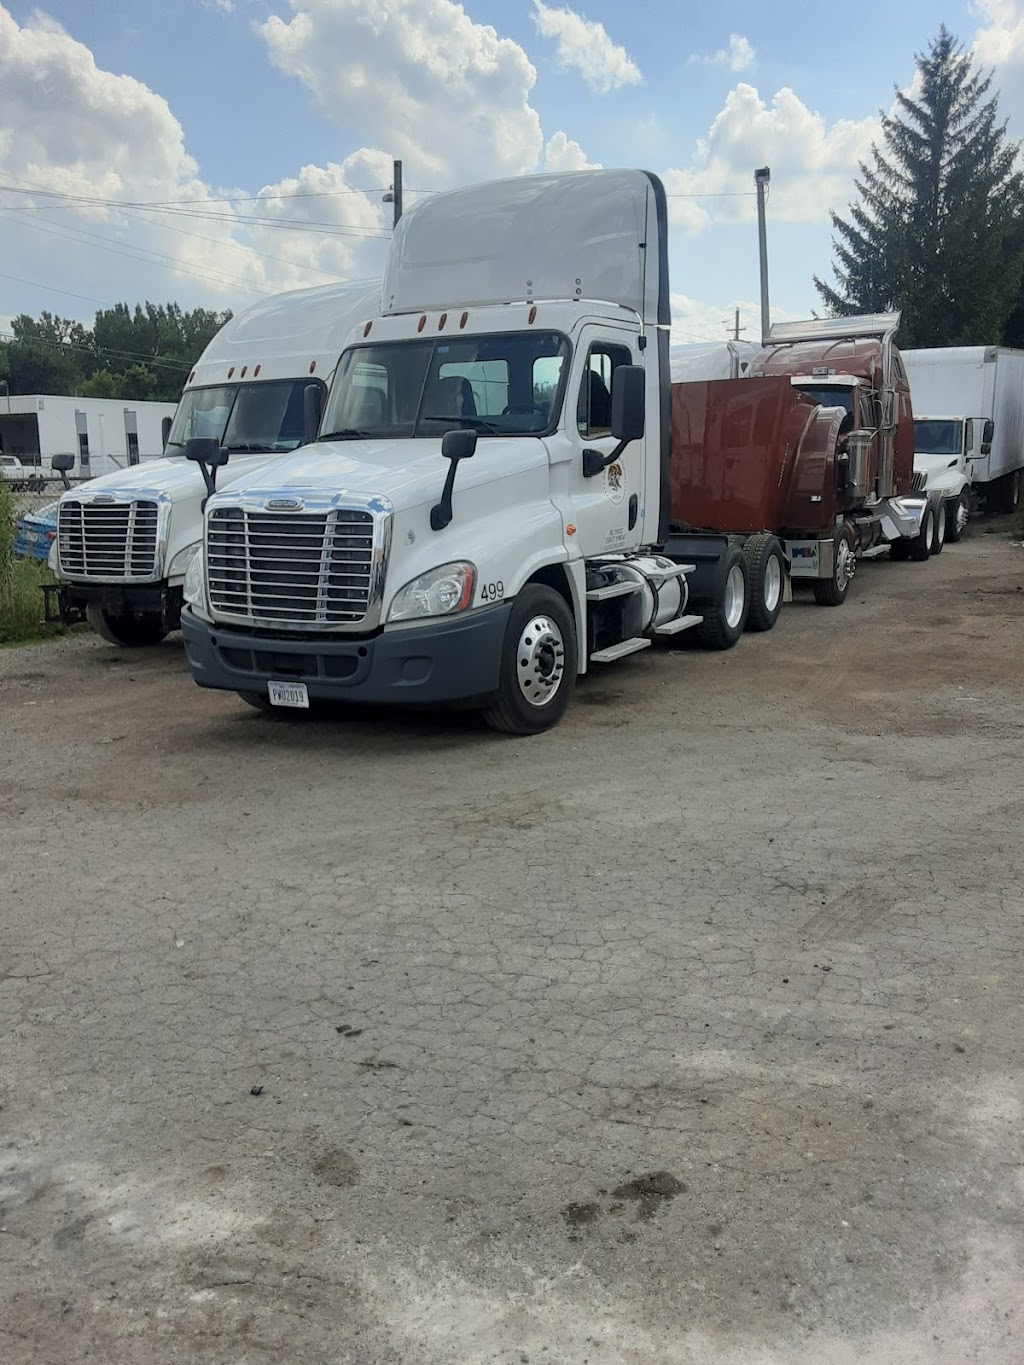 B & B Truck & Trailer Repair | 1700 Feddern Ave, Grove City, OH 43123 | Phone: (614) 801-9901